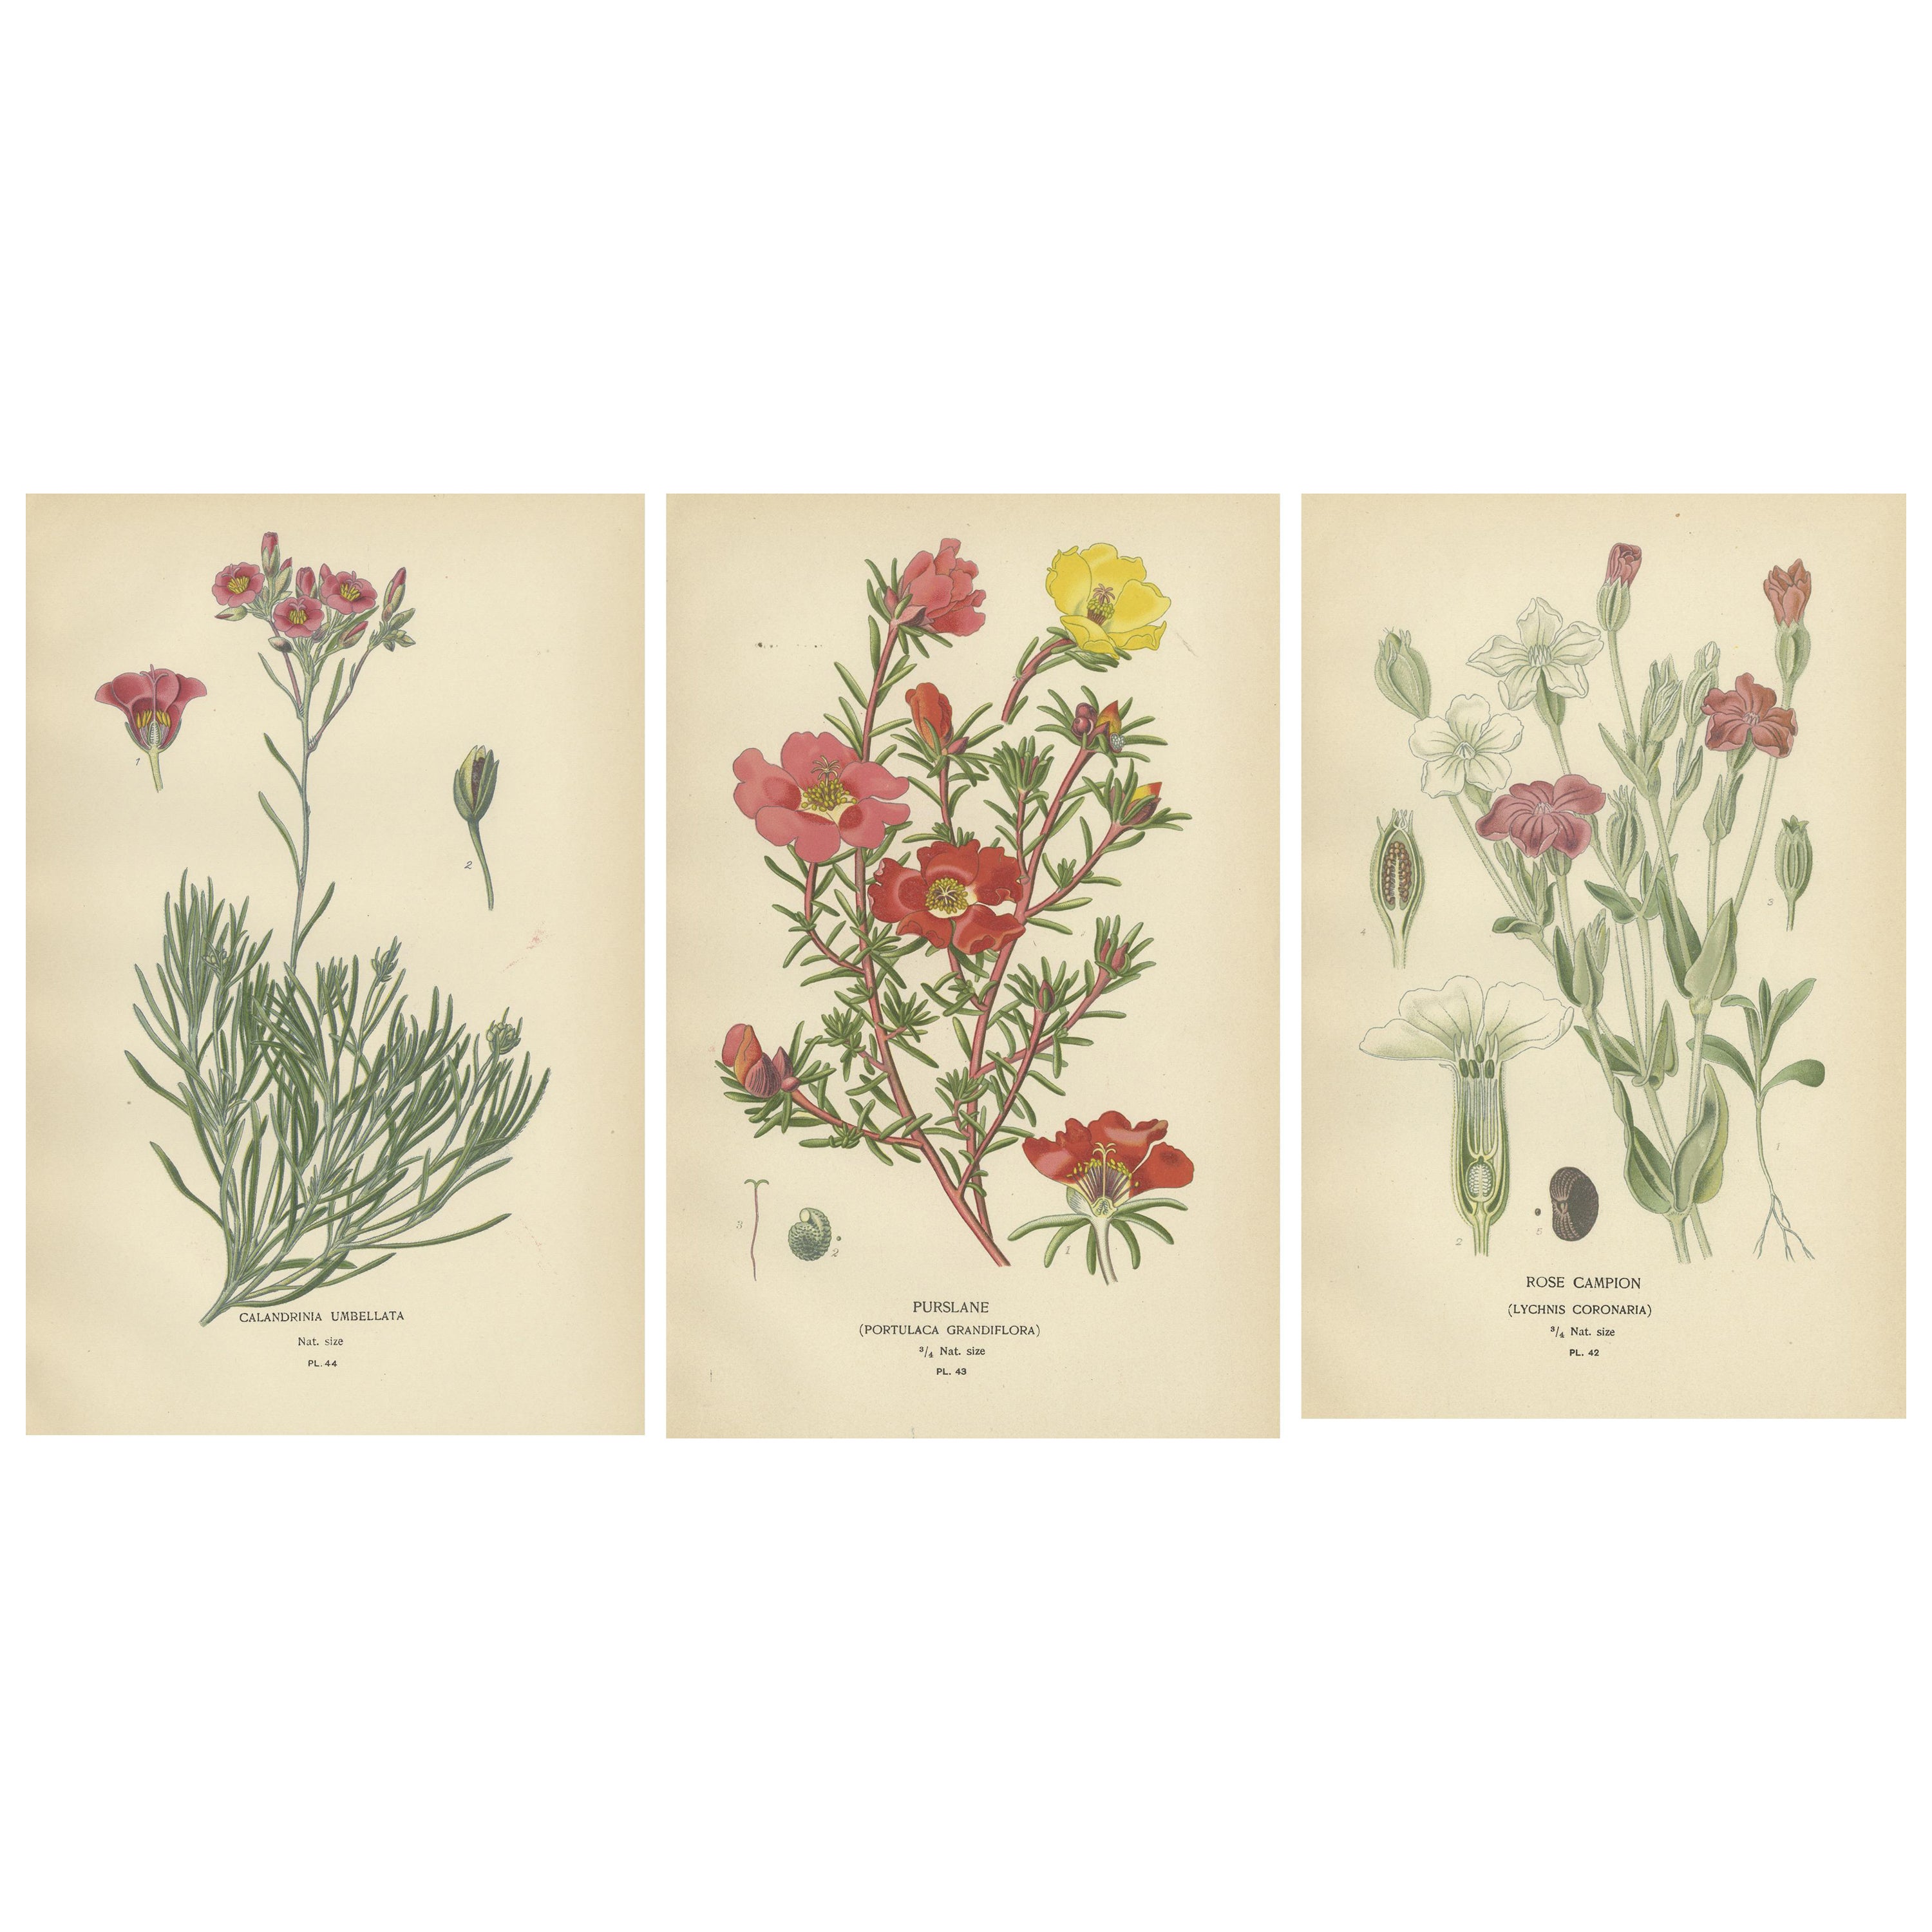 Ephemere Blüten: Eine Chronik der botanischen Eleganz von 1896